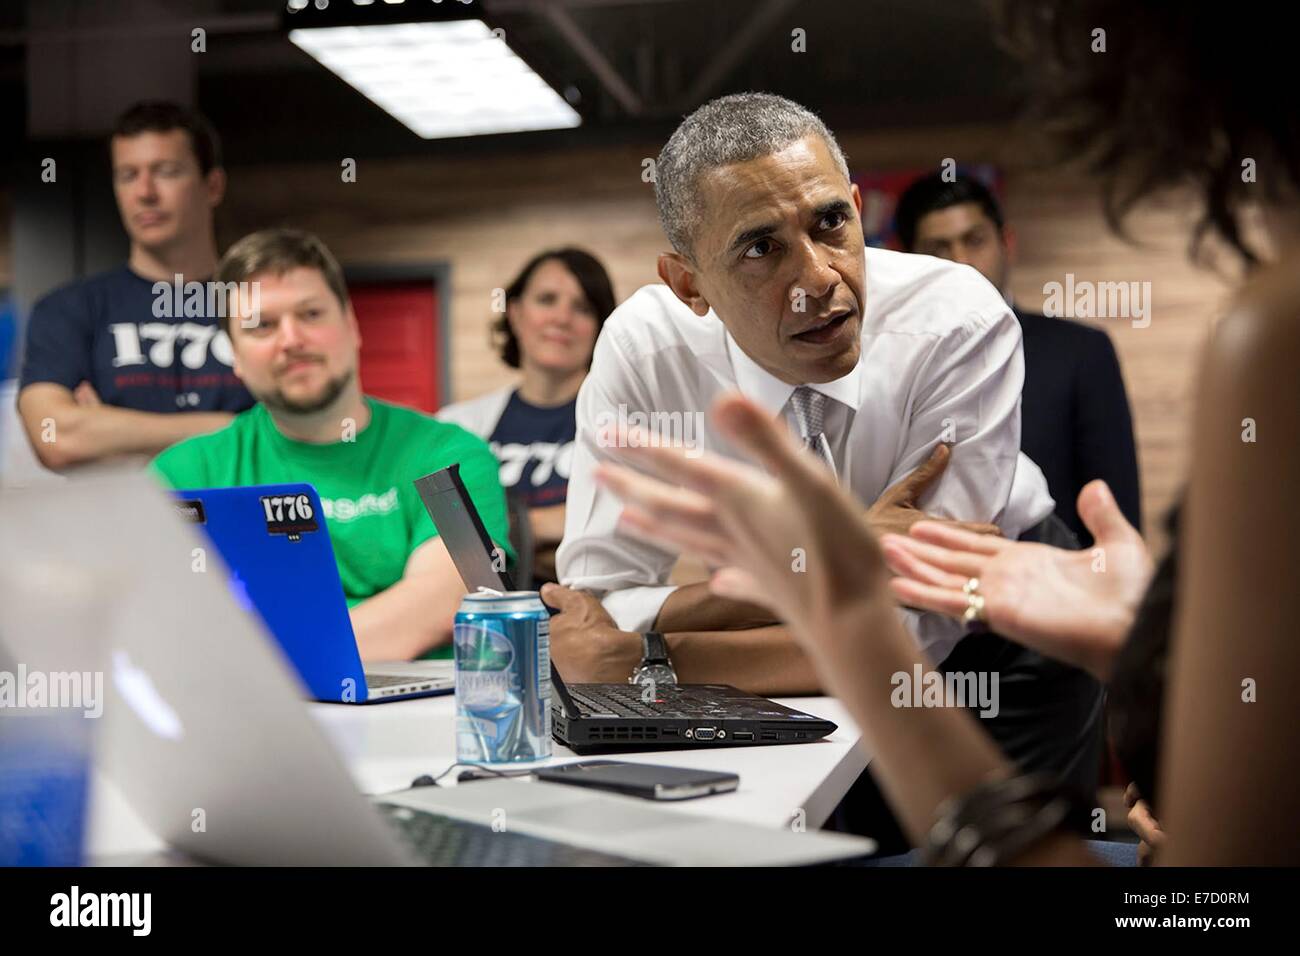 US-Präsident Barack Obama besucht mit Mitarbeitern vor liefern Hinweise auf 1776, Drehscheibe Tech Start 3. Juli 2014 in Washington, DC. Stockfoto